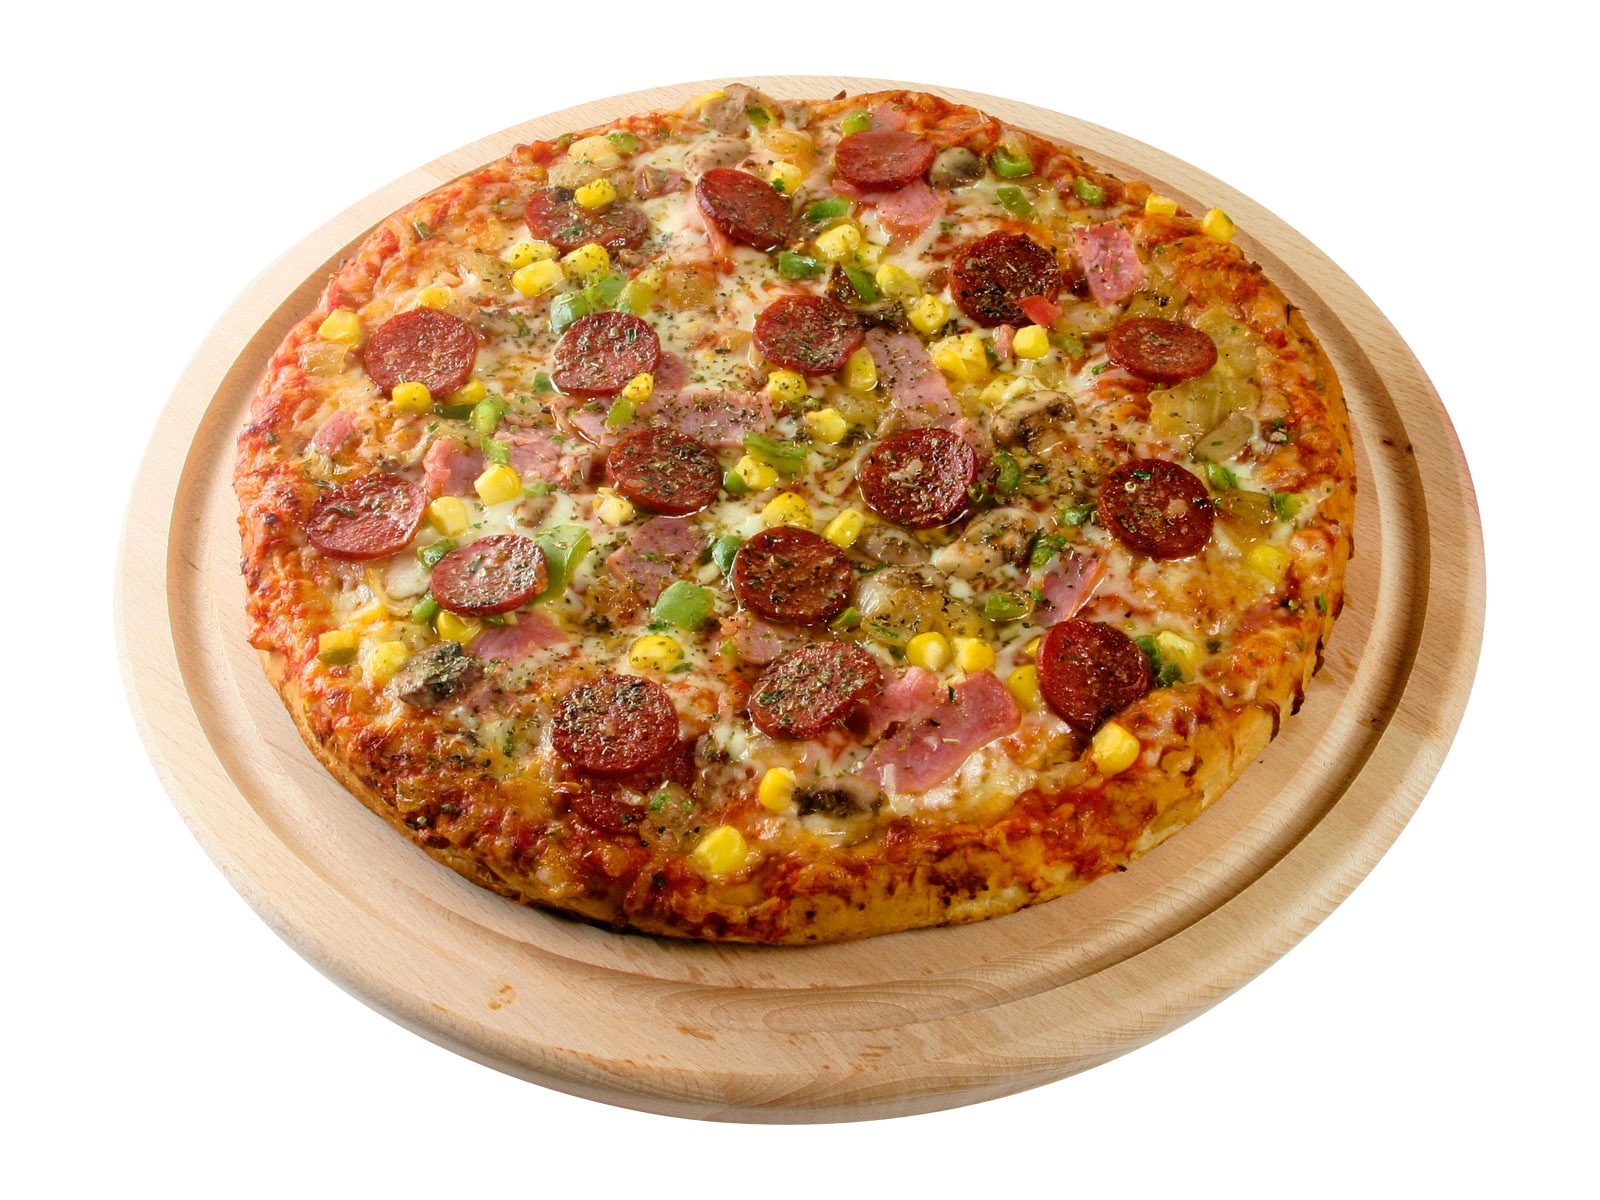 Fondos de pizzerías de Alimentos (3) #18 - 1600x1200